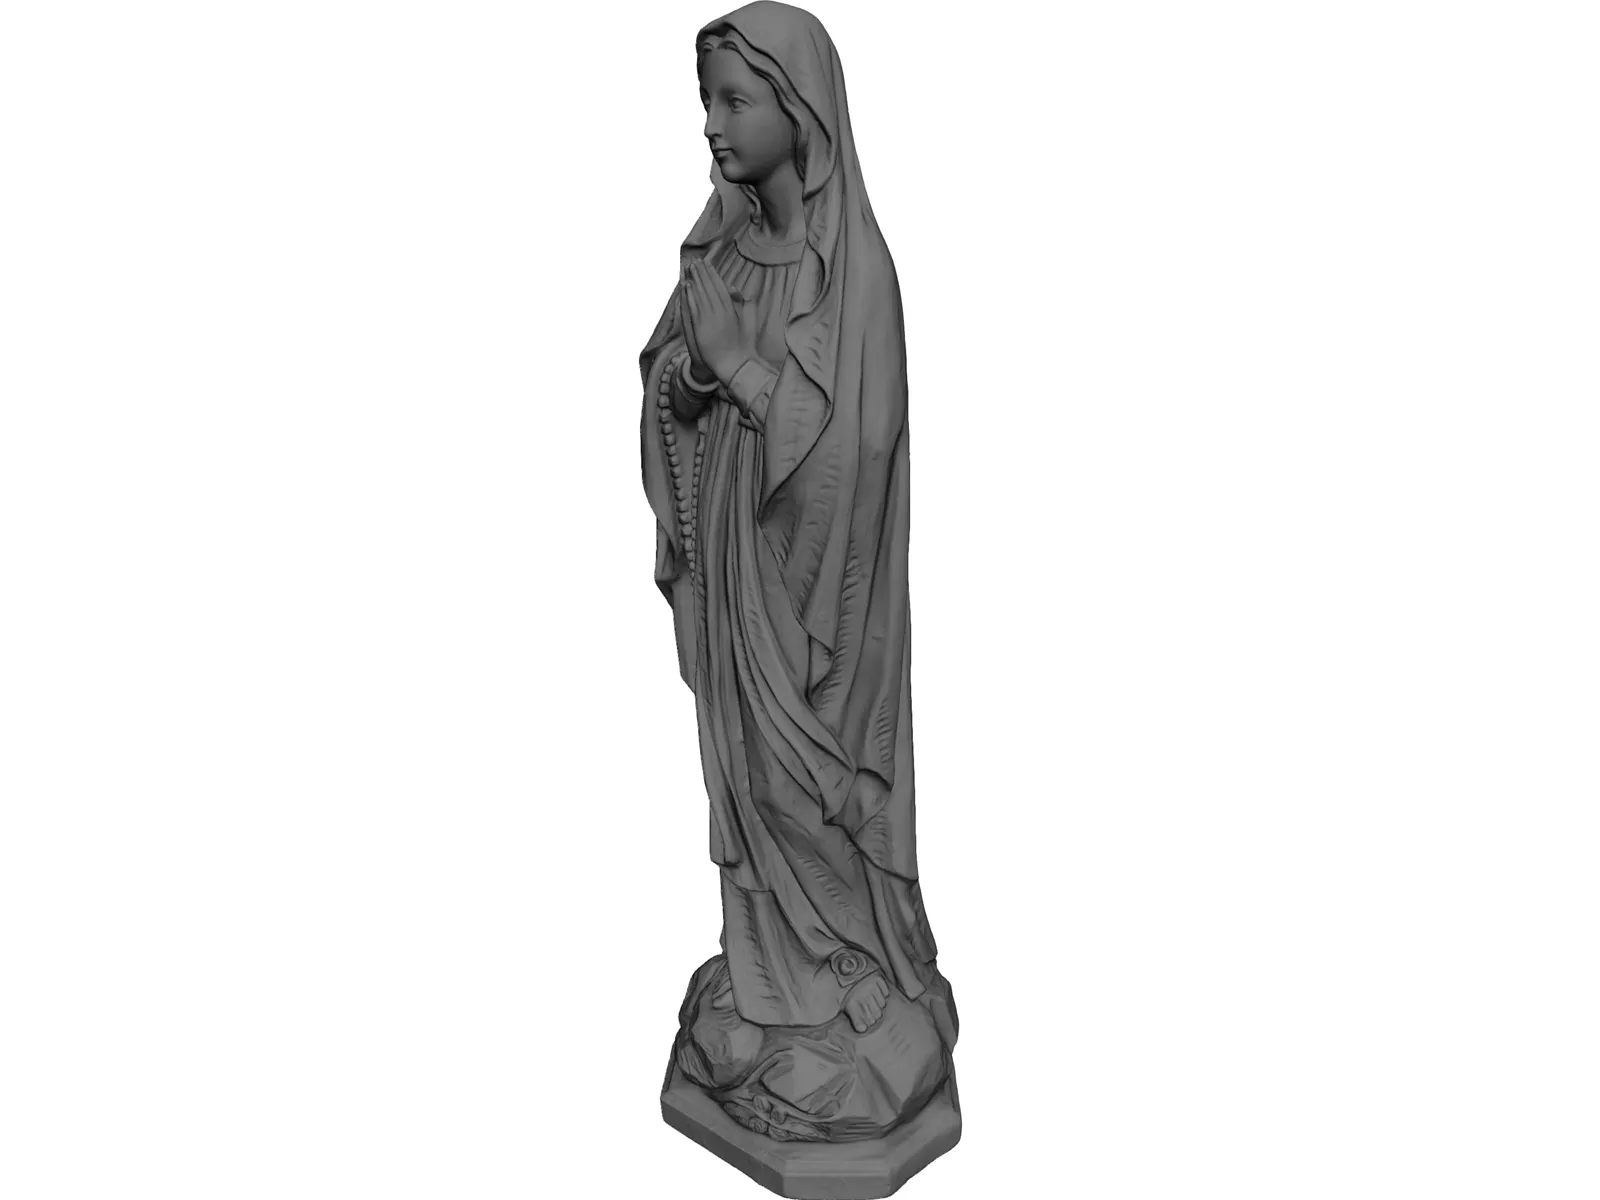 Virgin Mary 3D Model